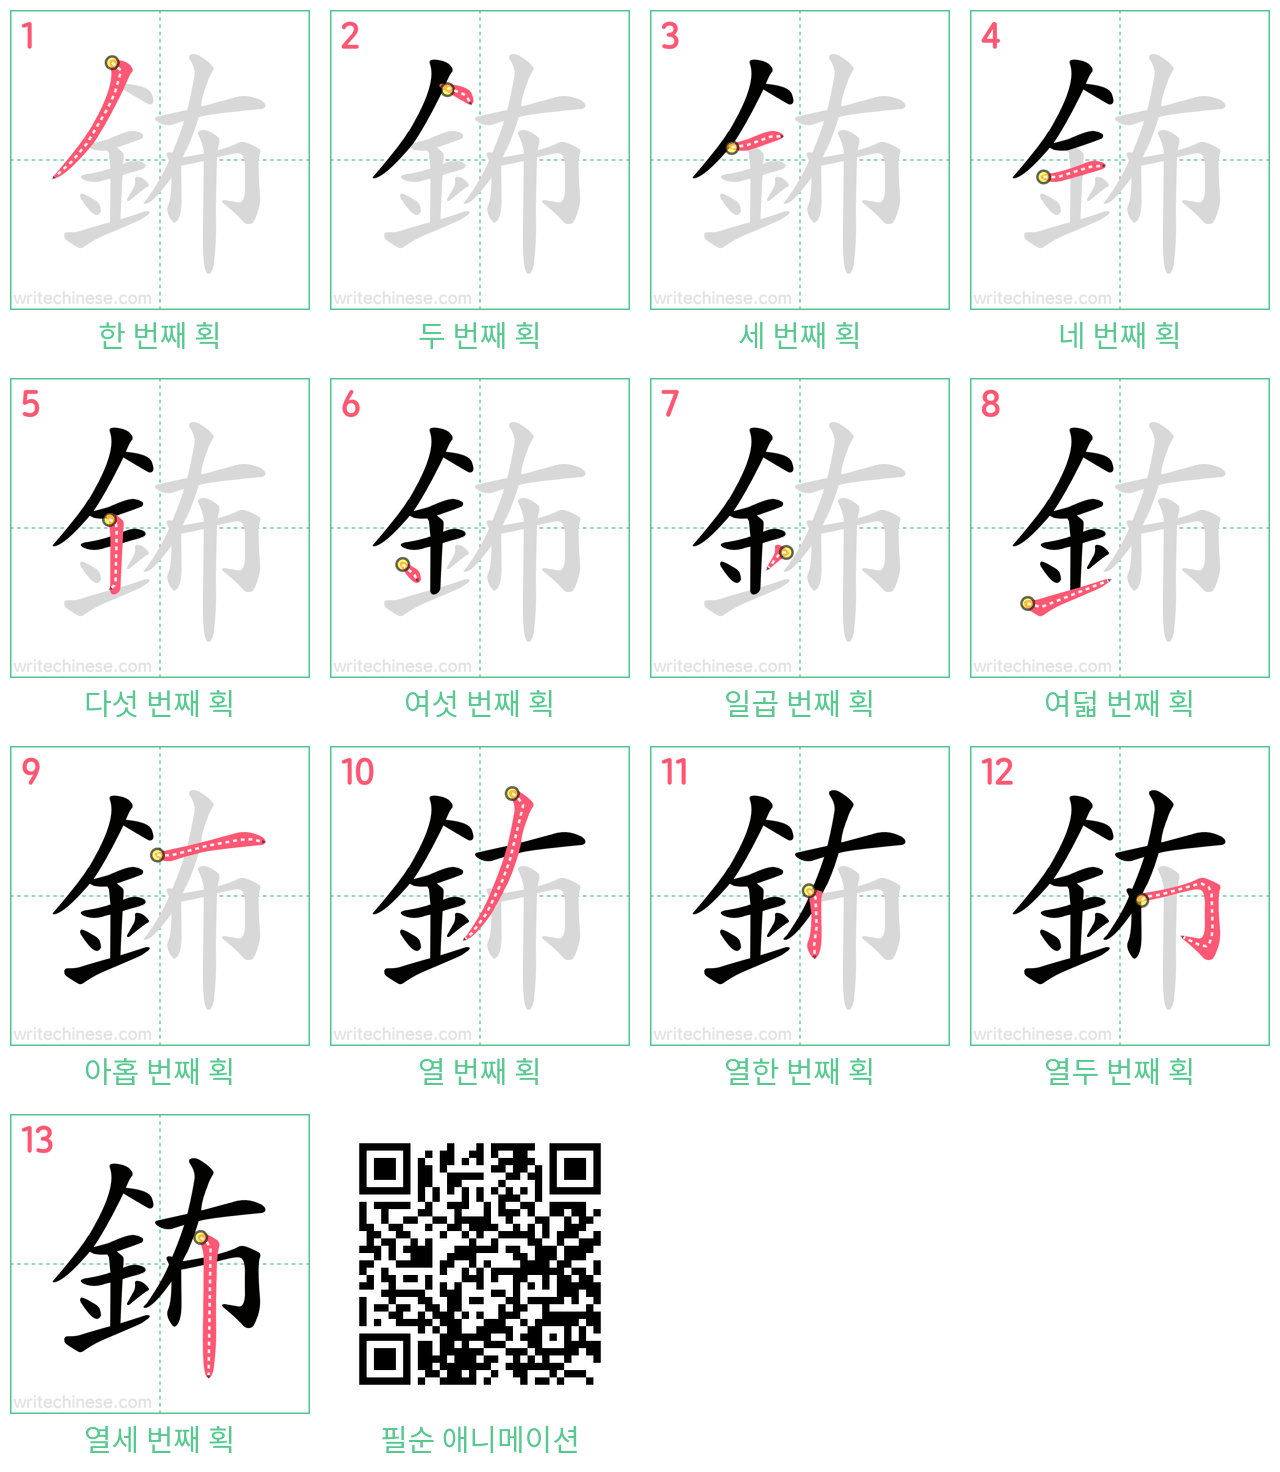 鈽 step-by-step stroke order diagrams